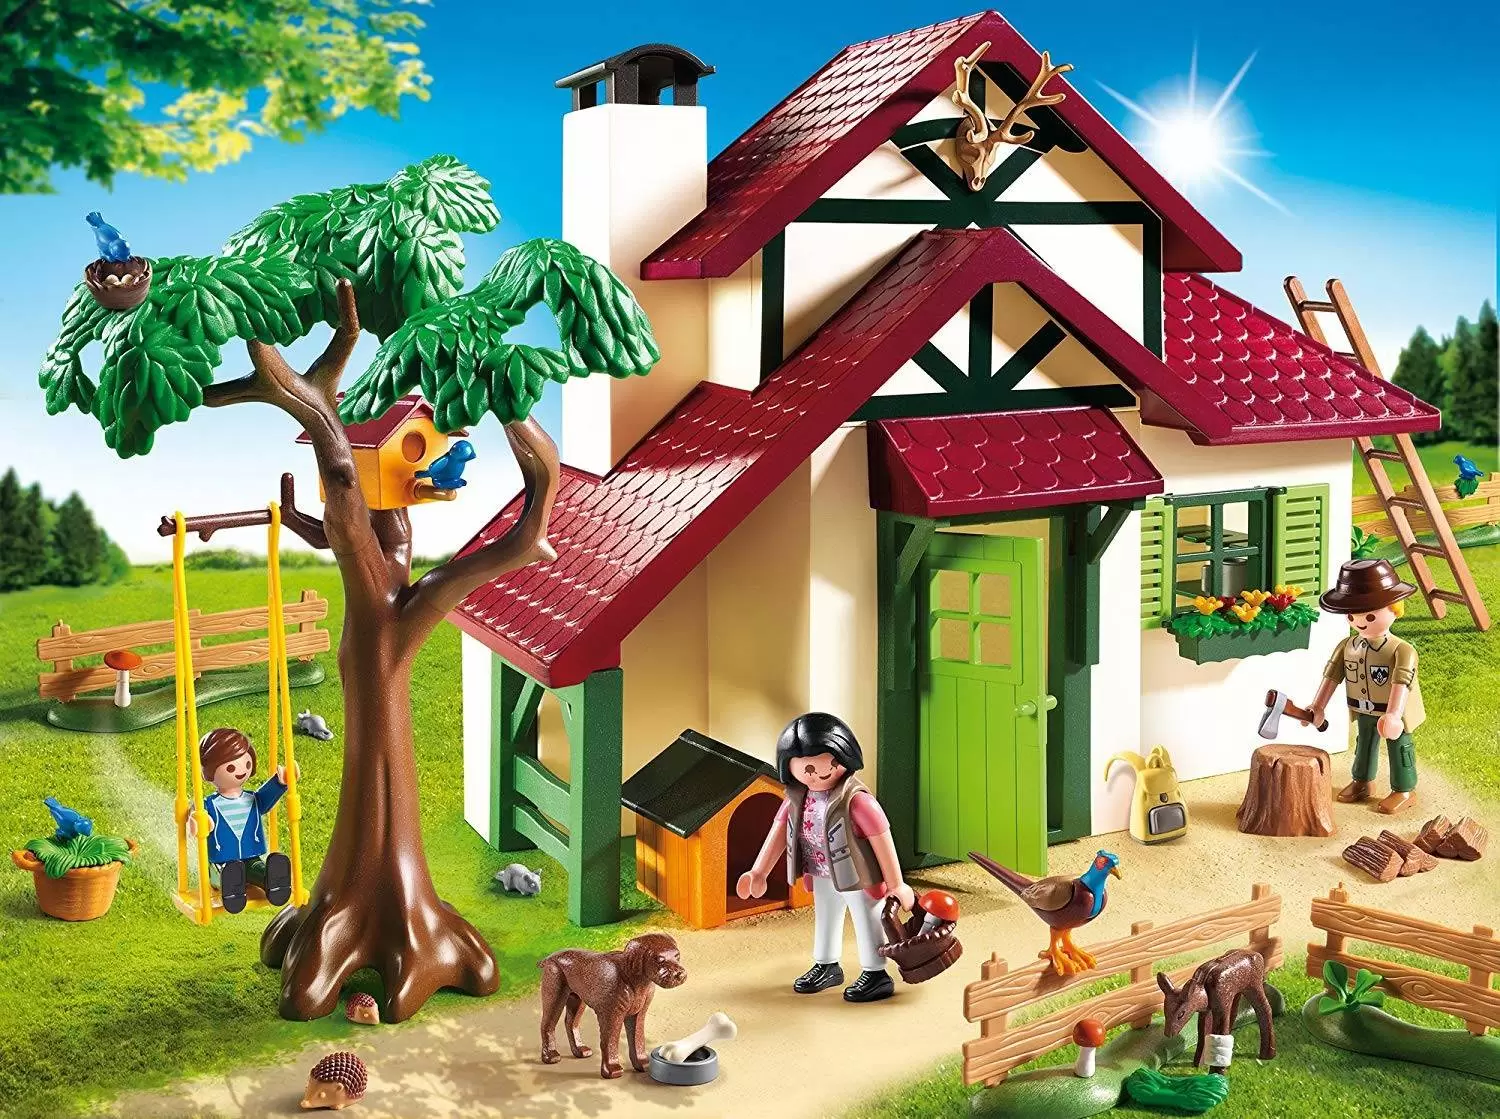 Playmobil à la Montage - Maison forestière